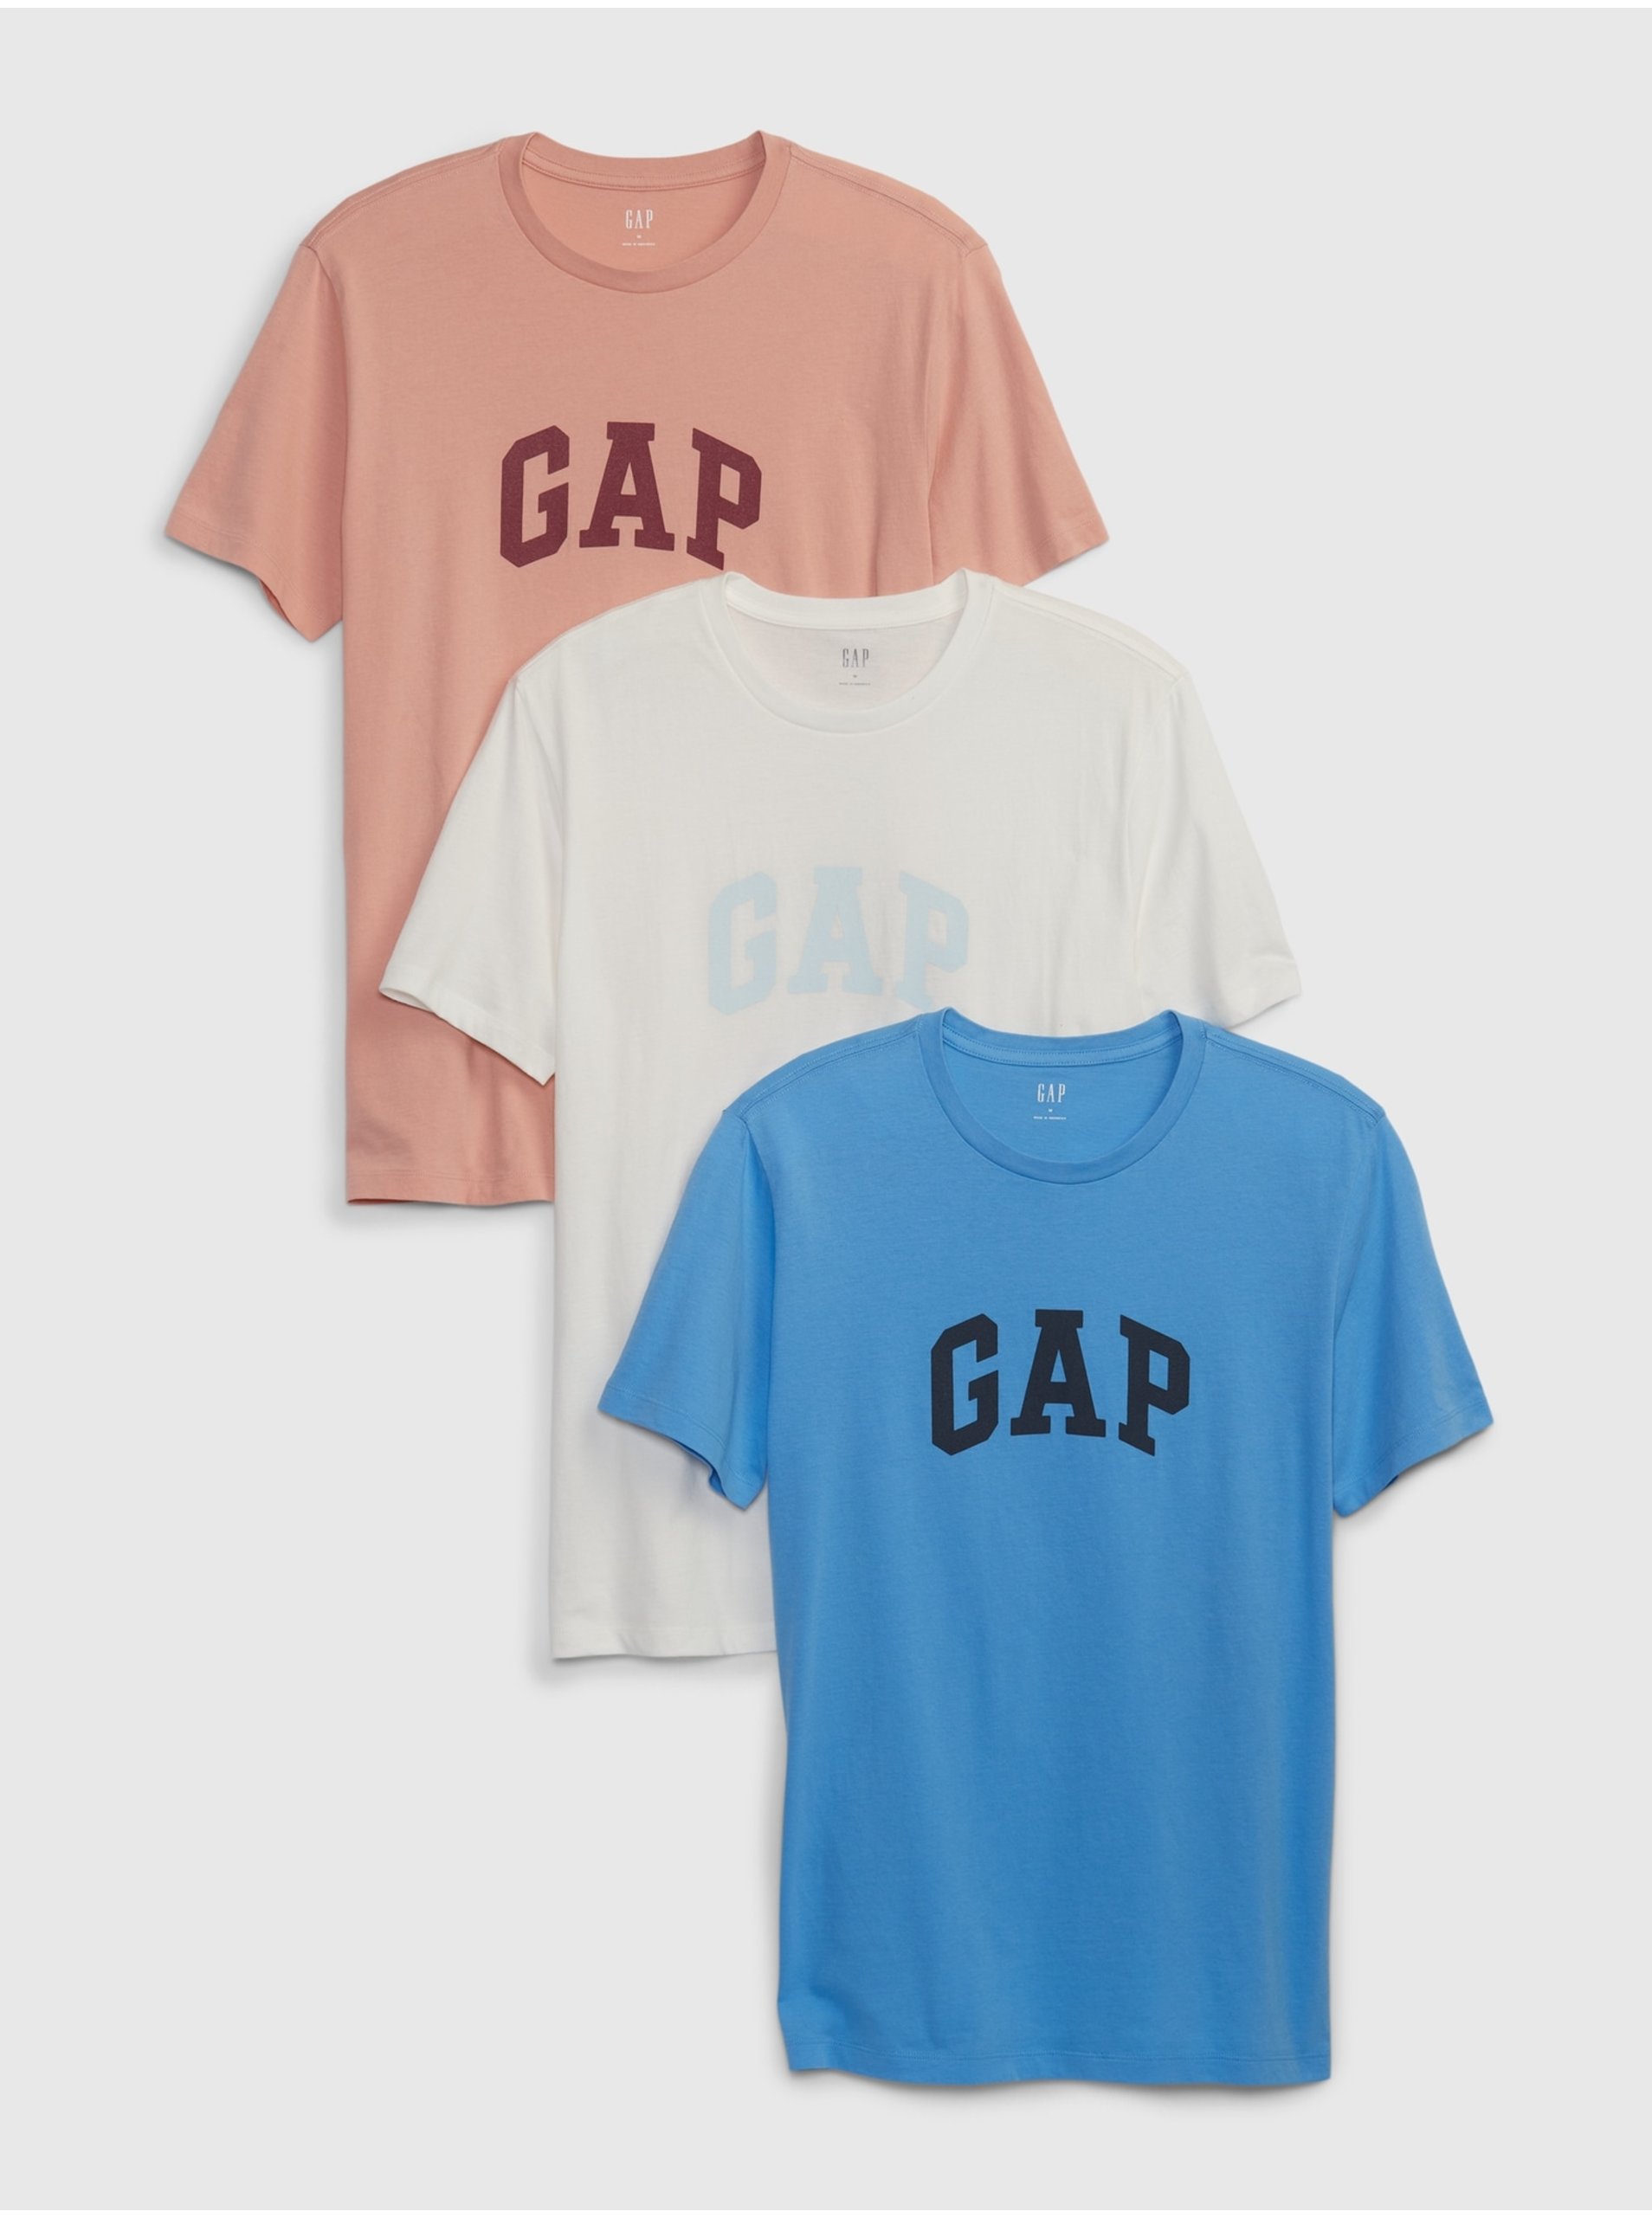 Lacno Farebné pánske tričko s logom GAP, 3ks